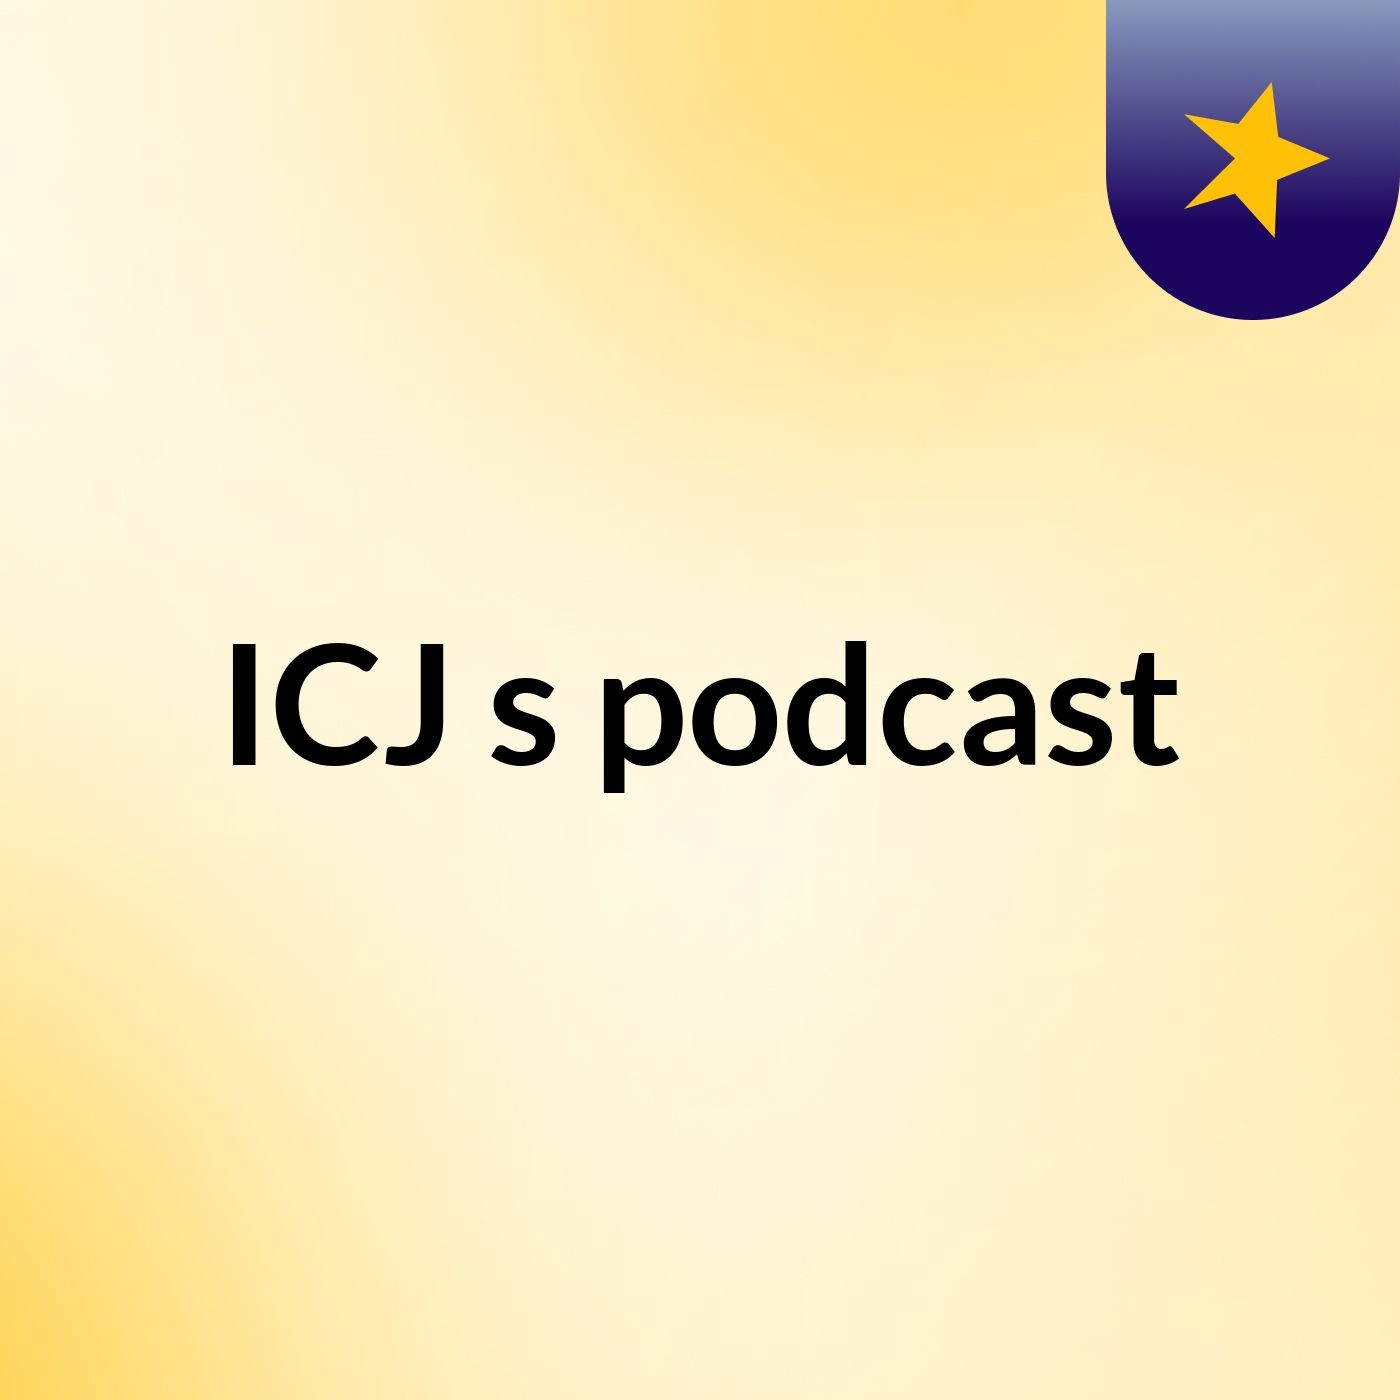 Episode 2 - ICJ's podcast